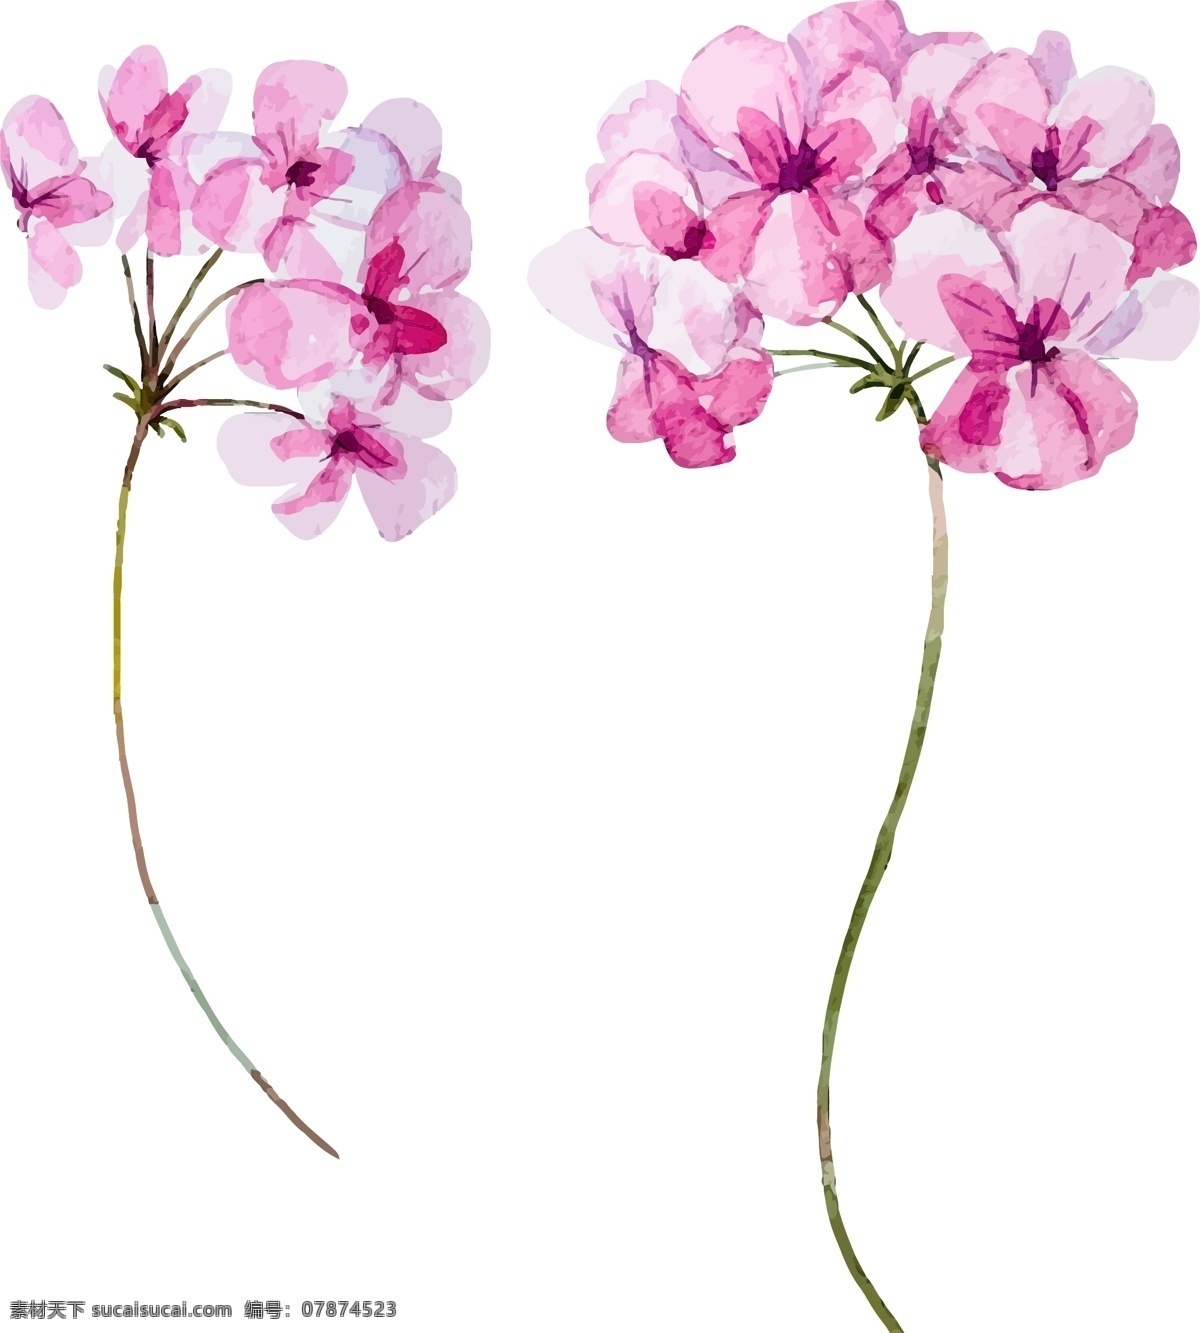 水彩 束 野生 植物 eps格式 geranium 老鹳草 手绘 水彩素材